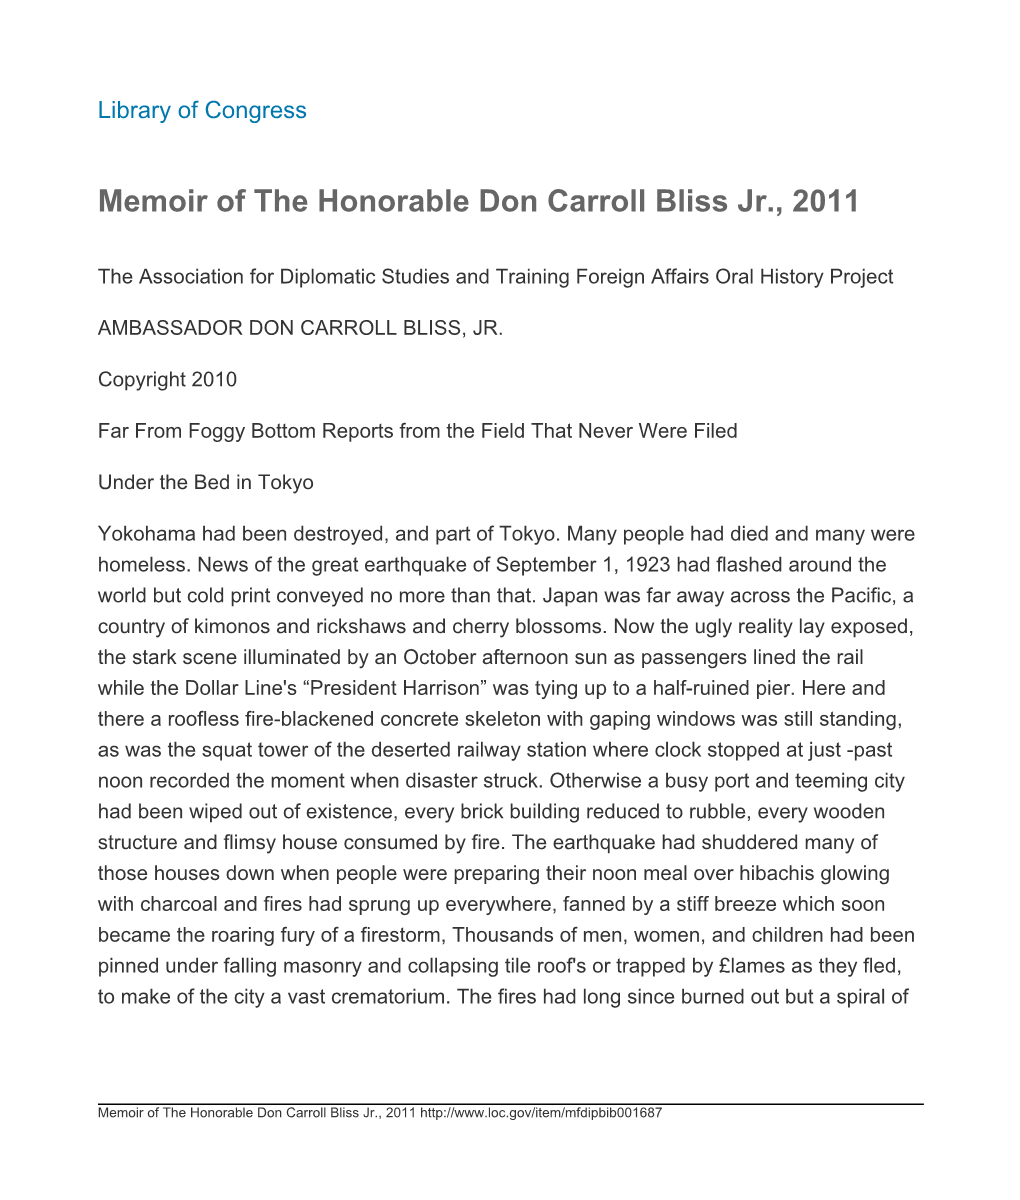 Memoir of the Honorable Don Carroll Bliss Jr., 2011